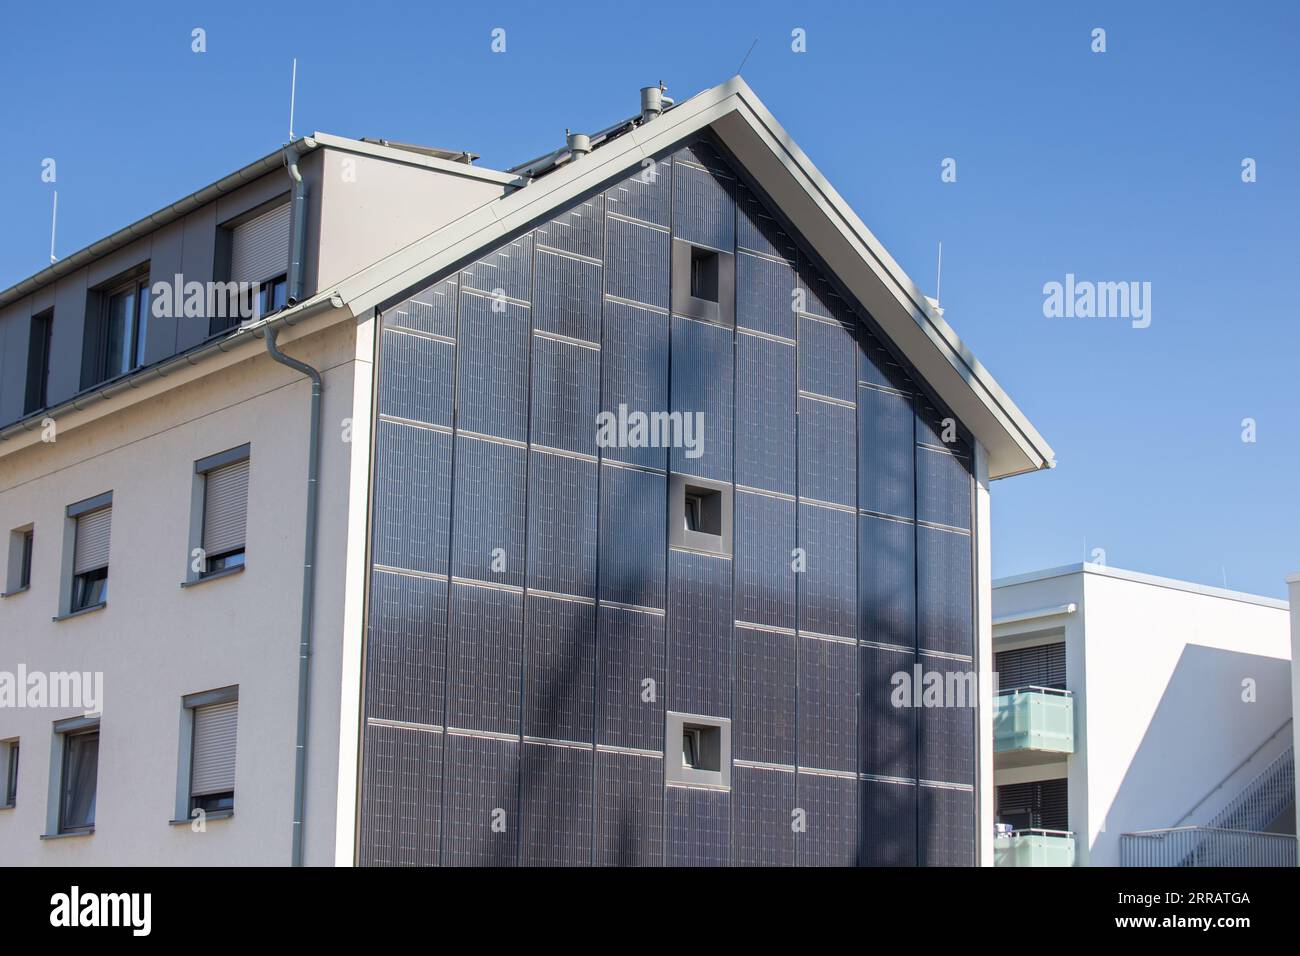 Apartmentgebäude mit Solarfassade Stockfoto